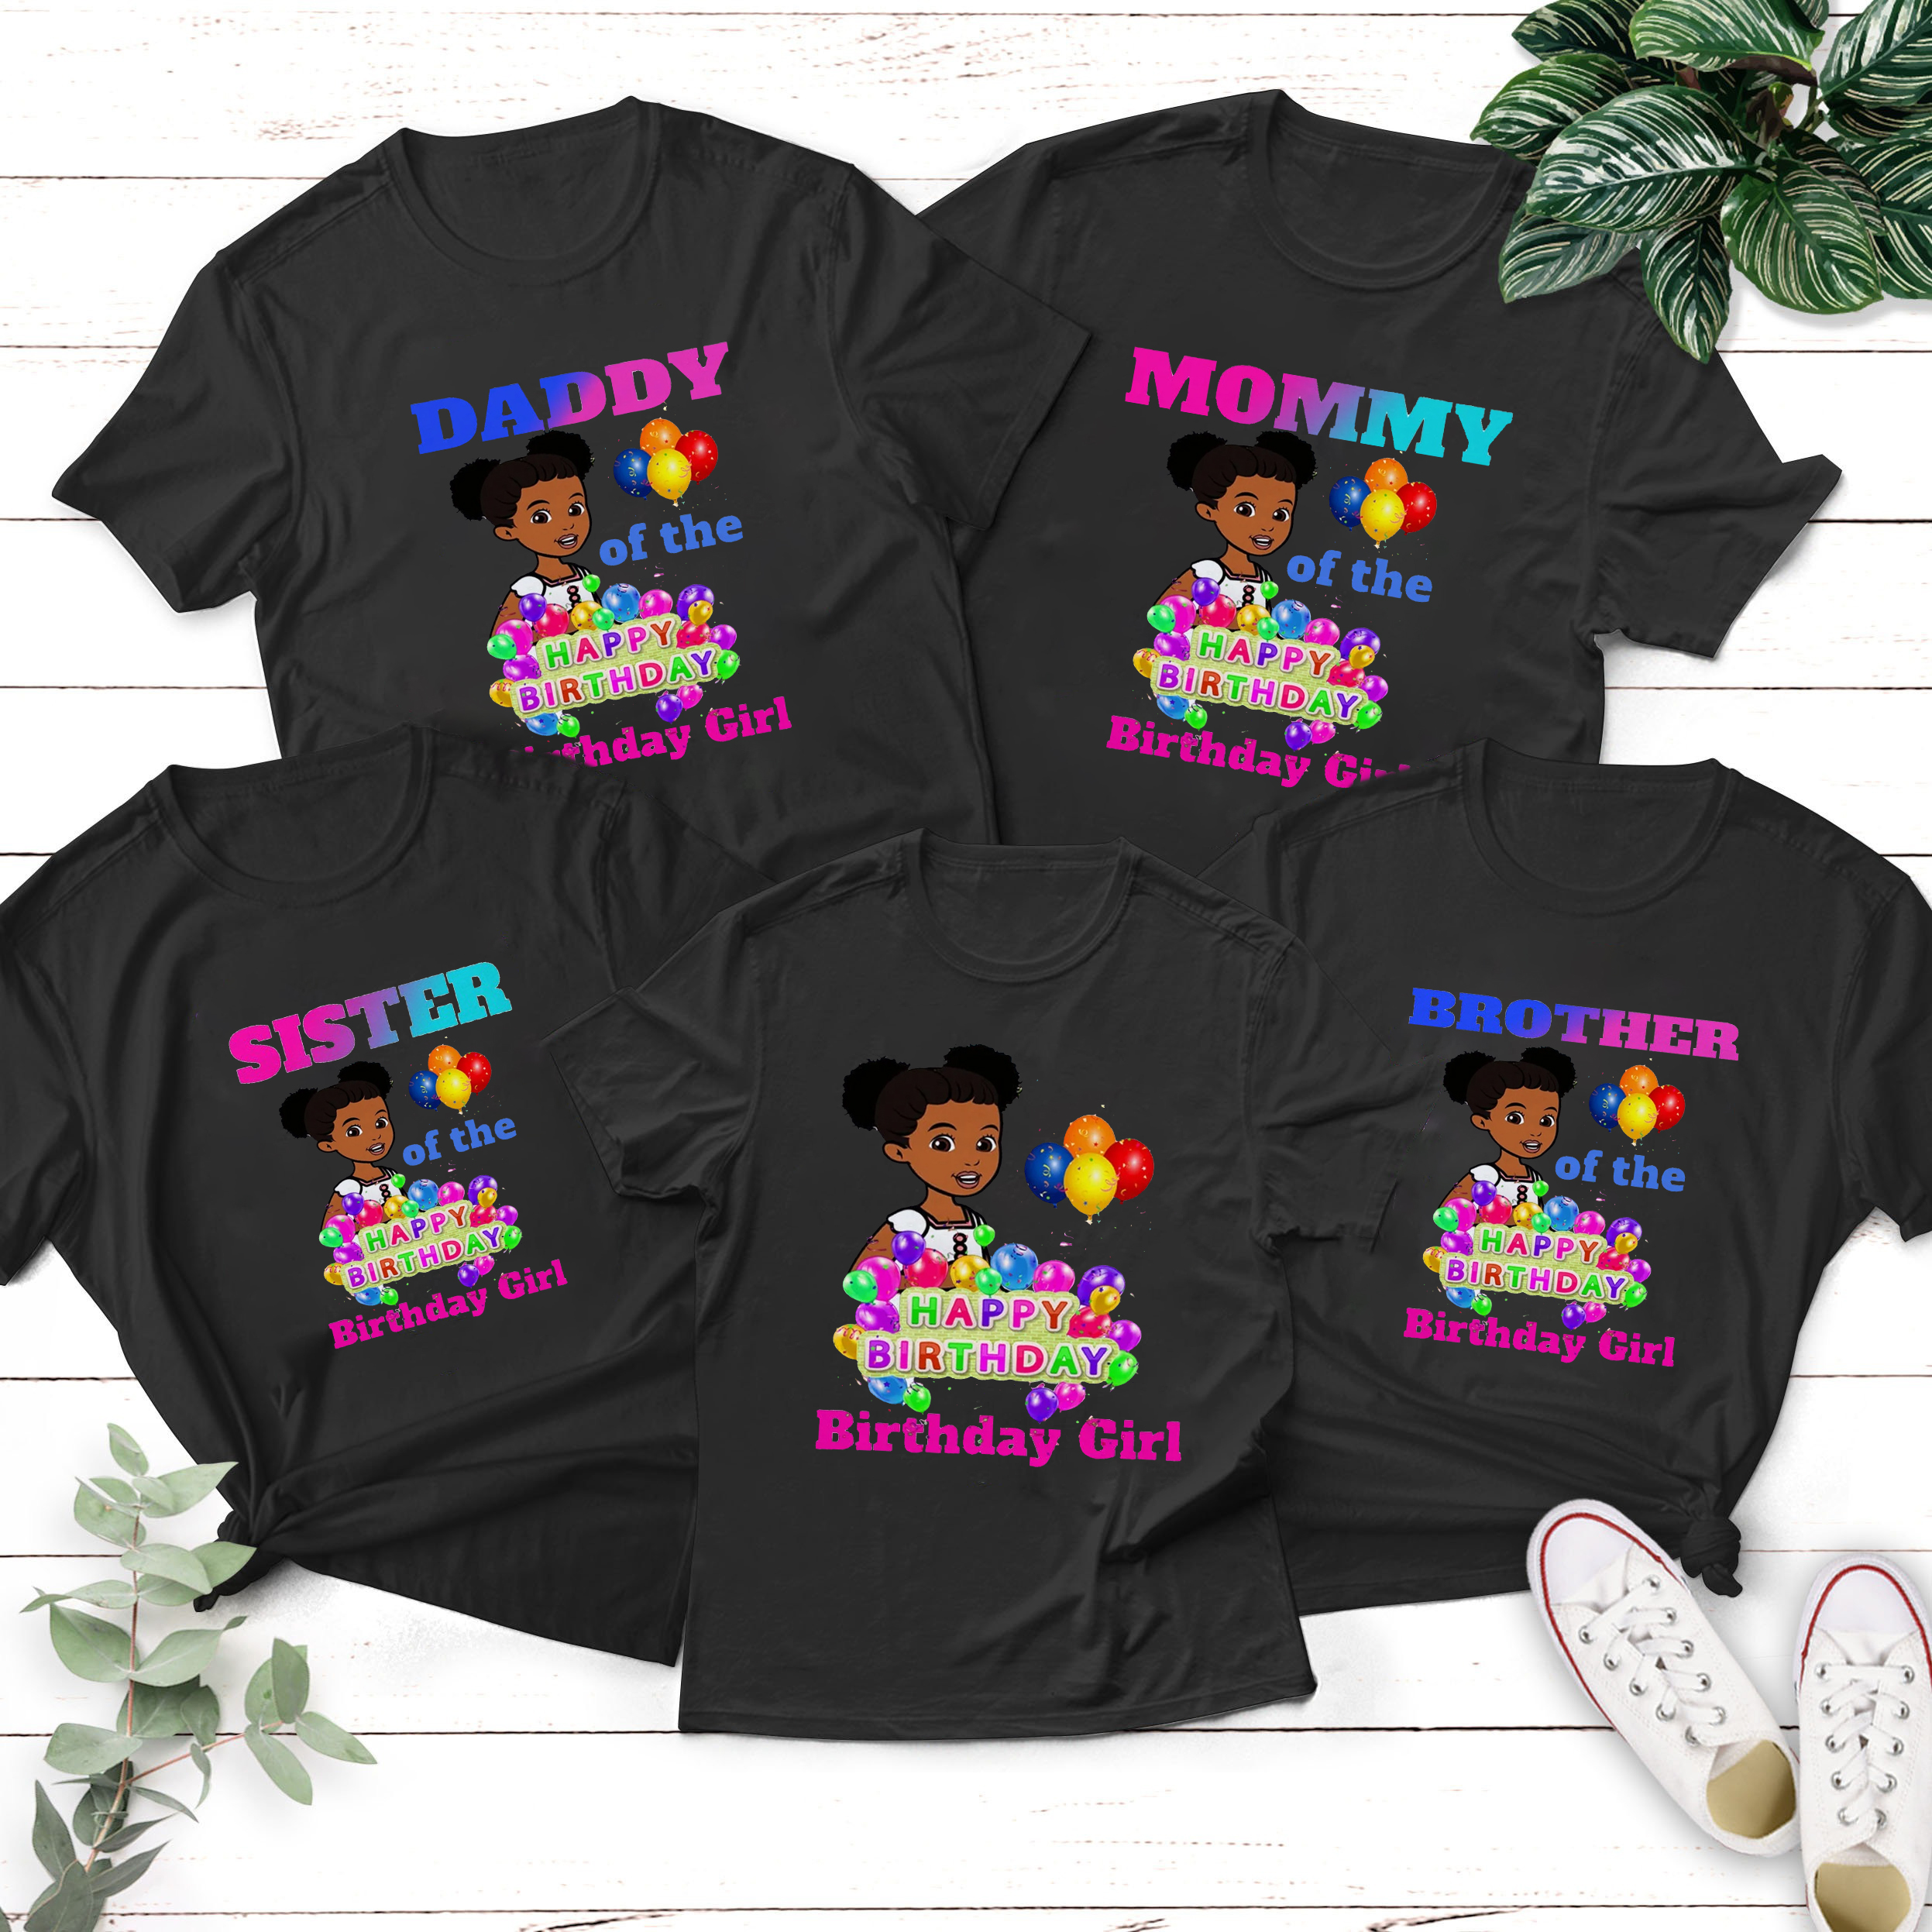 Personalized Gracies Corner Birthday Shirt, Gracies Corner Family Shirt, Gracies Corner Shirt, Custom Gracies Corner Birthday Girl Tee